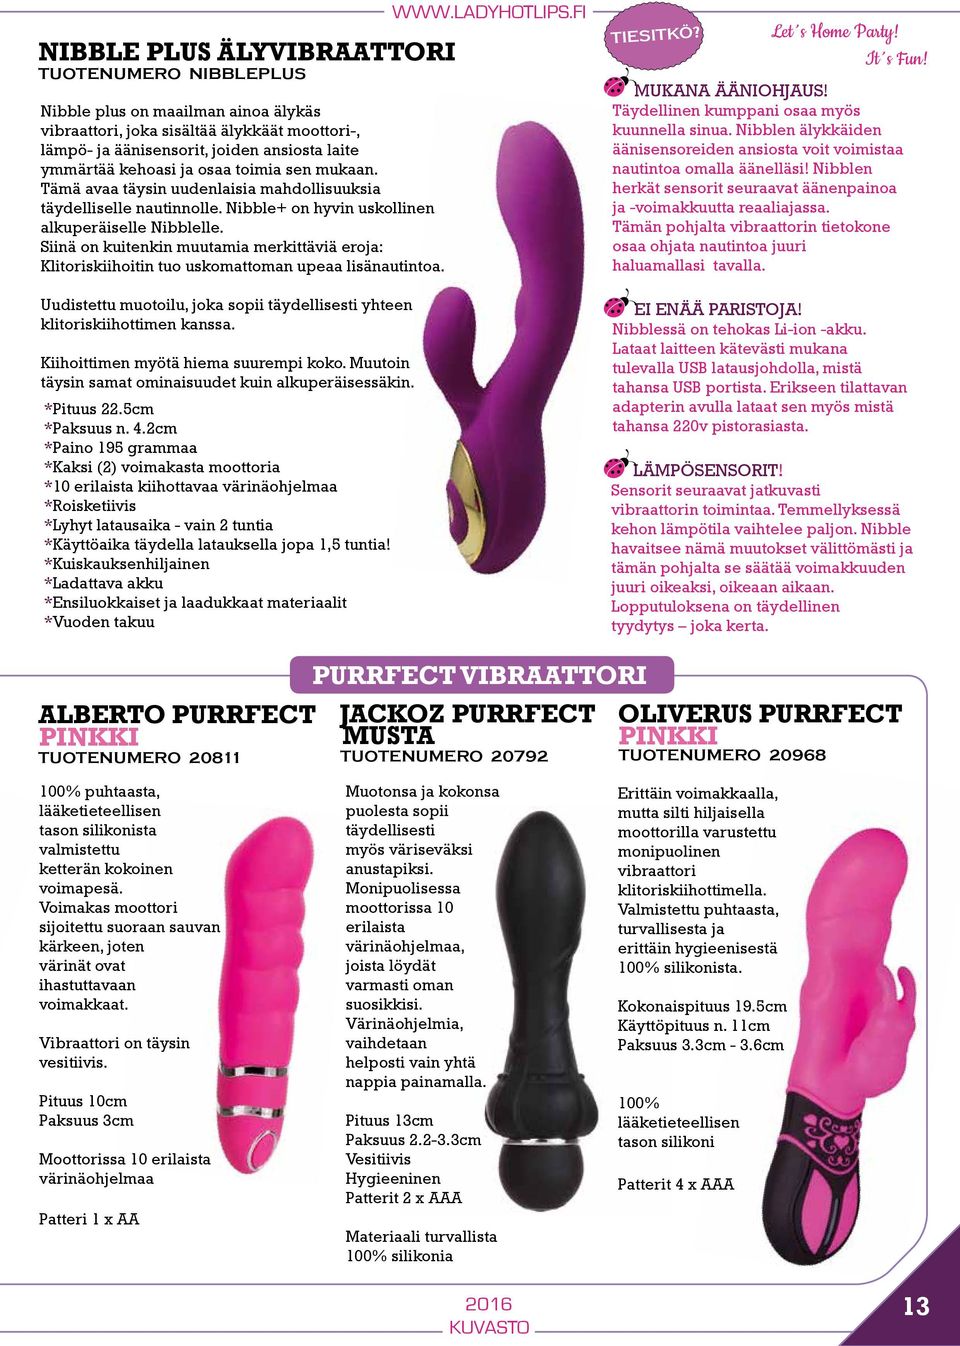 Siinä on kuitenkin muutamia merkittäviä eroja: Klitoriskiihoitin tuo uskomattoman upeaa lisänautintoa. Uudistettu muotoilu, joka sopii täydellisesti yhteen klitoriskiihottimen kanssa.